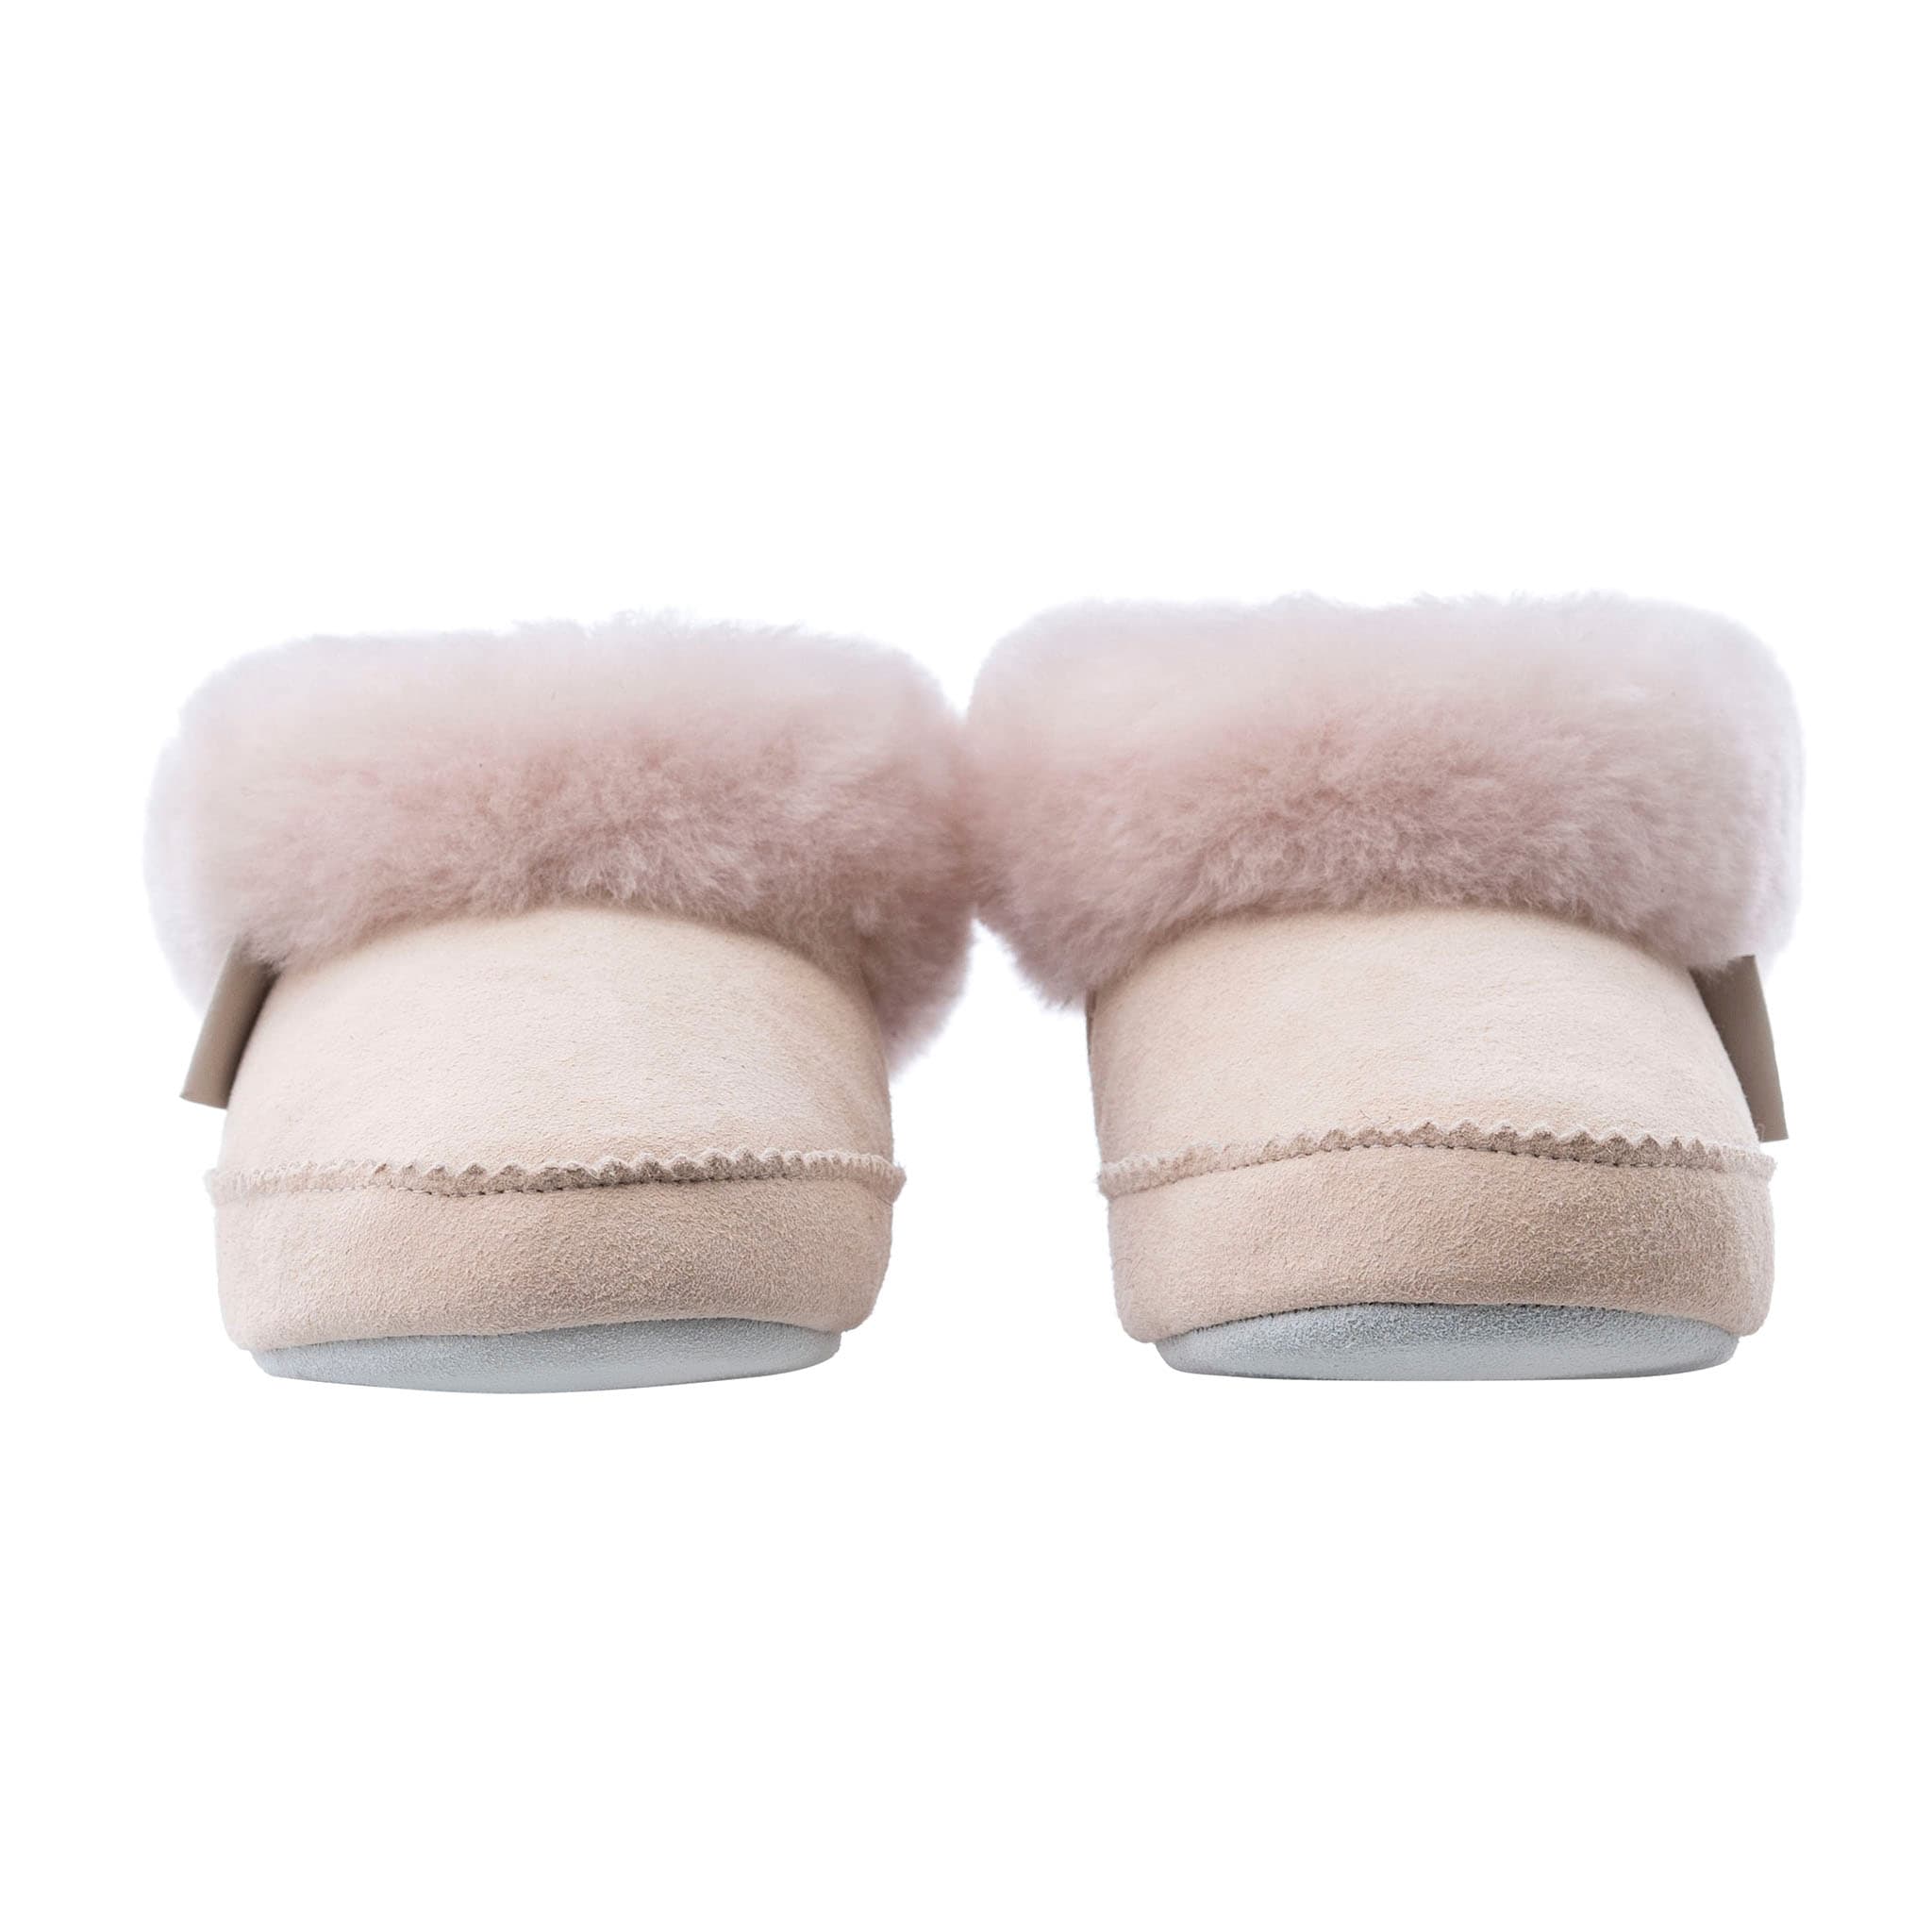 Piteå slippers, size 24-29